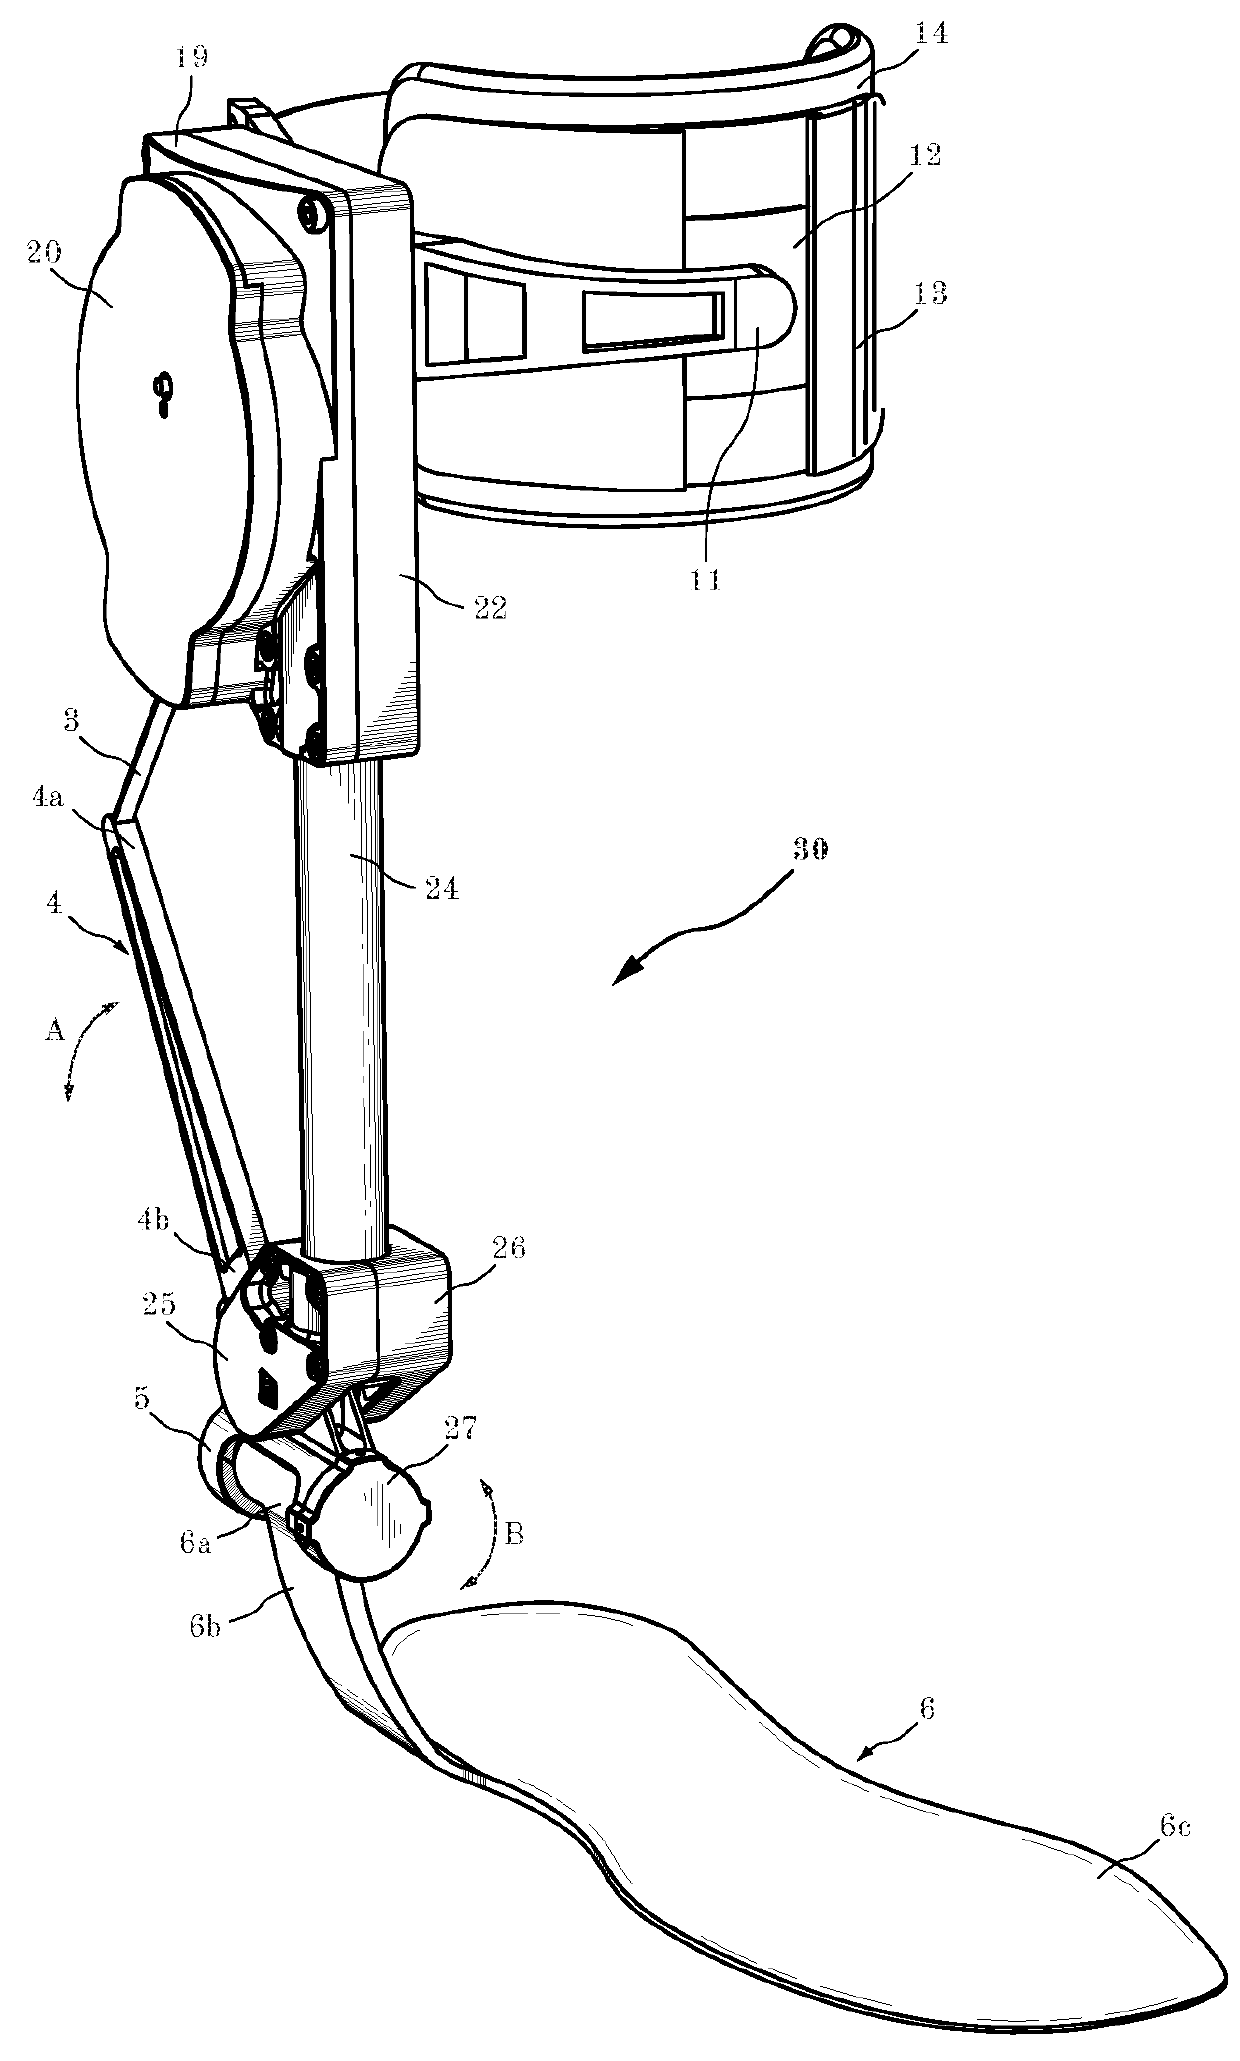 Unidirectional actuated exoskeleton device